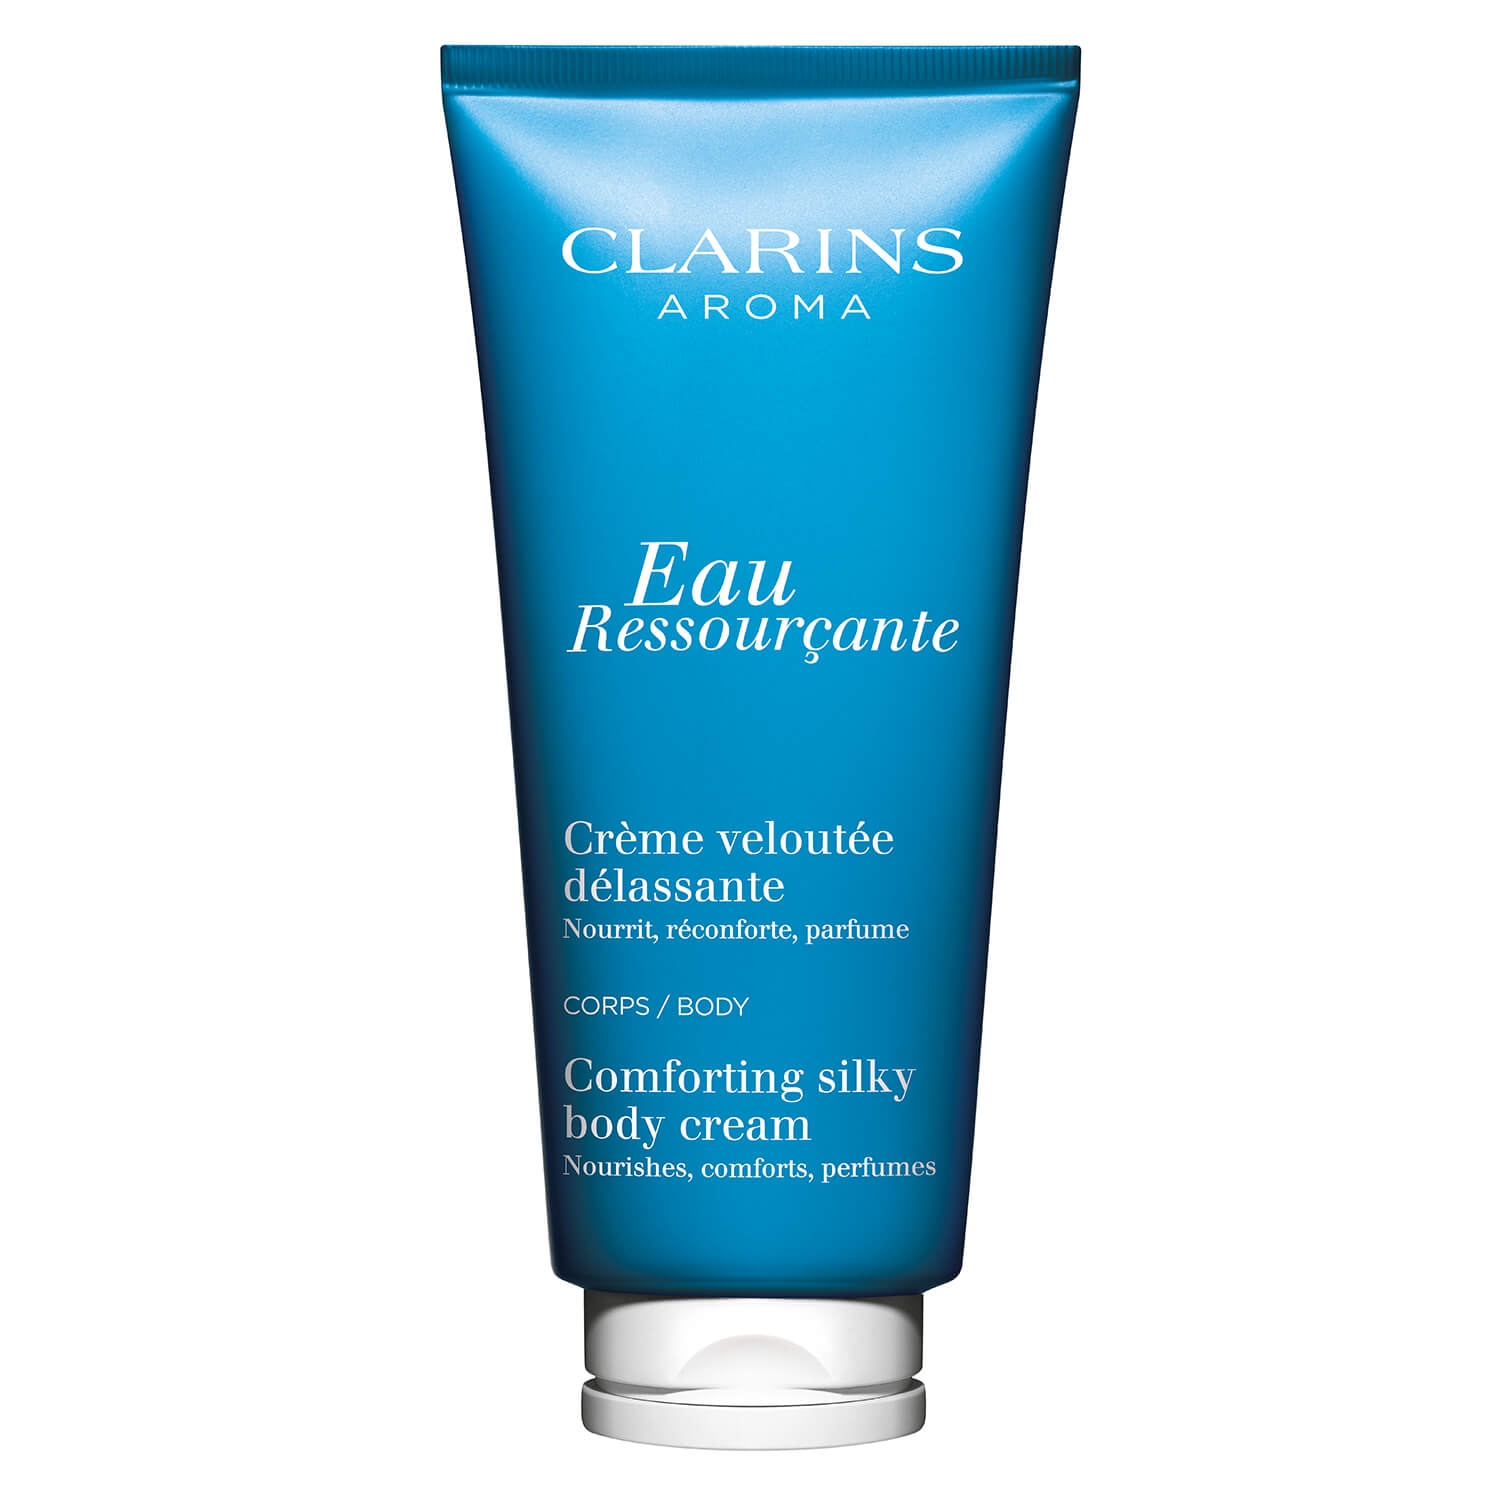 Produktbild von Clarins Scent - Eau Ressourçante Body Cream